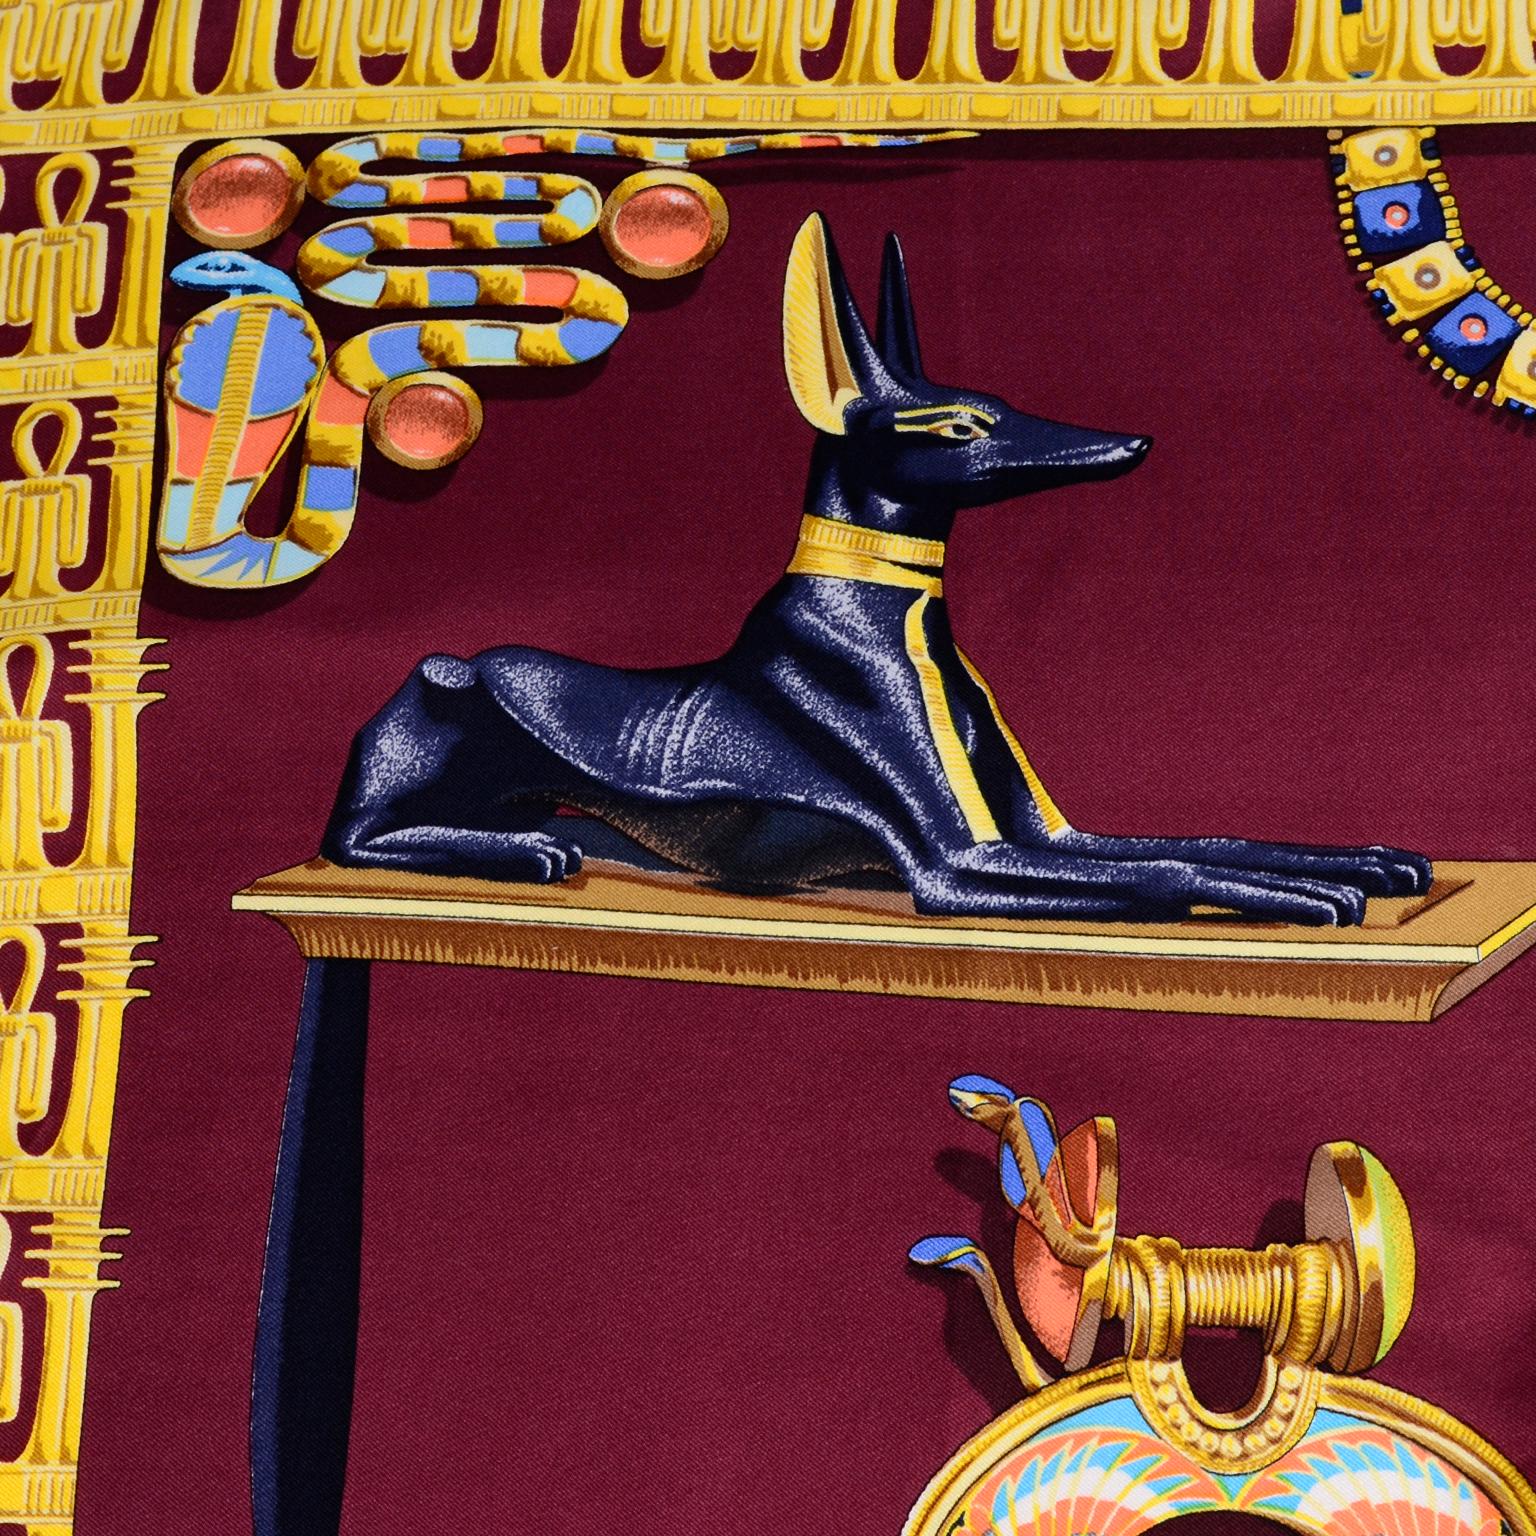 Brown Hermes King Tut Tutankhamun Burgundy Silk Scarf by Vladimir Rybaltchenko in 1976